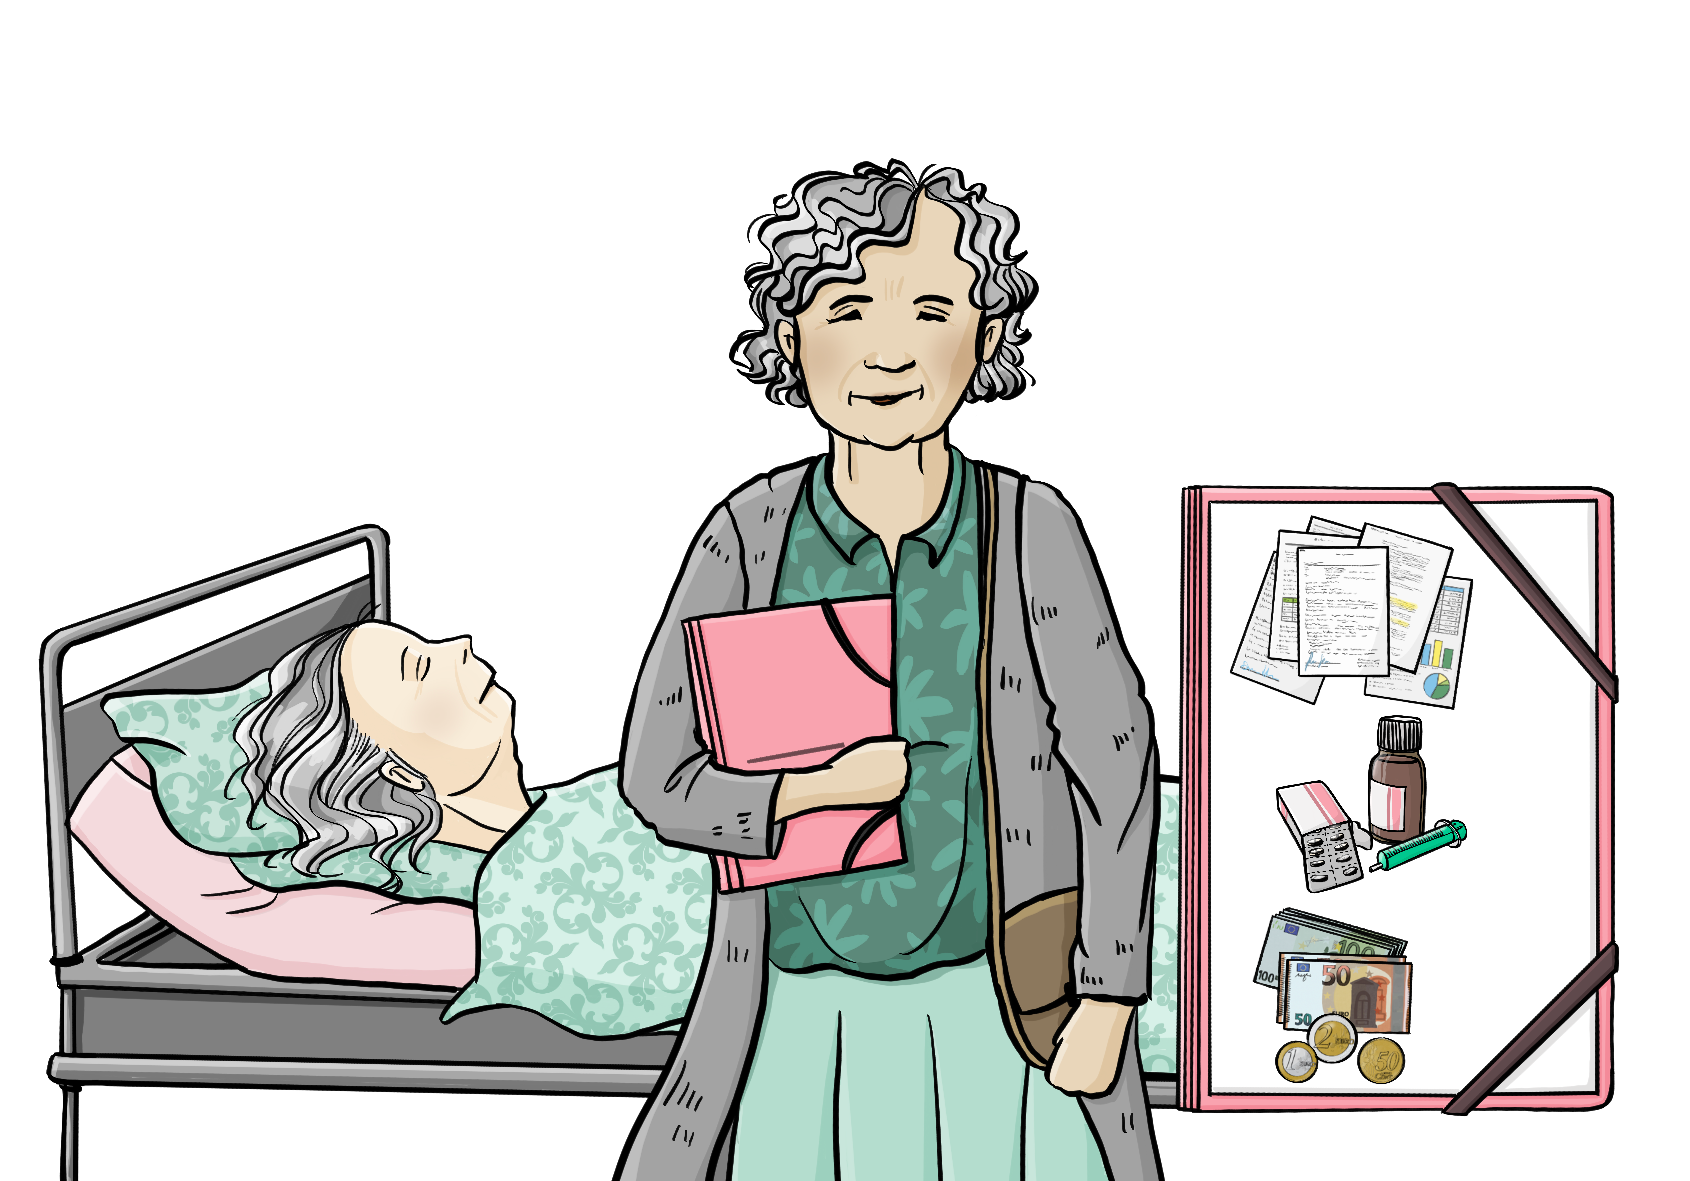 Eine ältere Frau mit einer Mappe unter dem Arm steht in einem Krankenhaus-Zimmer.  Hinter ihr liegt eine andere ältere Frau in einem Krankenhaus-Bett. Neben dem Bild ist eine größere Mappe. Auf der Mappe ist ein Bild von Medikamenten, Geld und Papieren. 